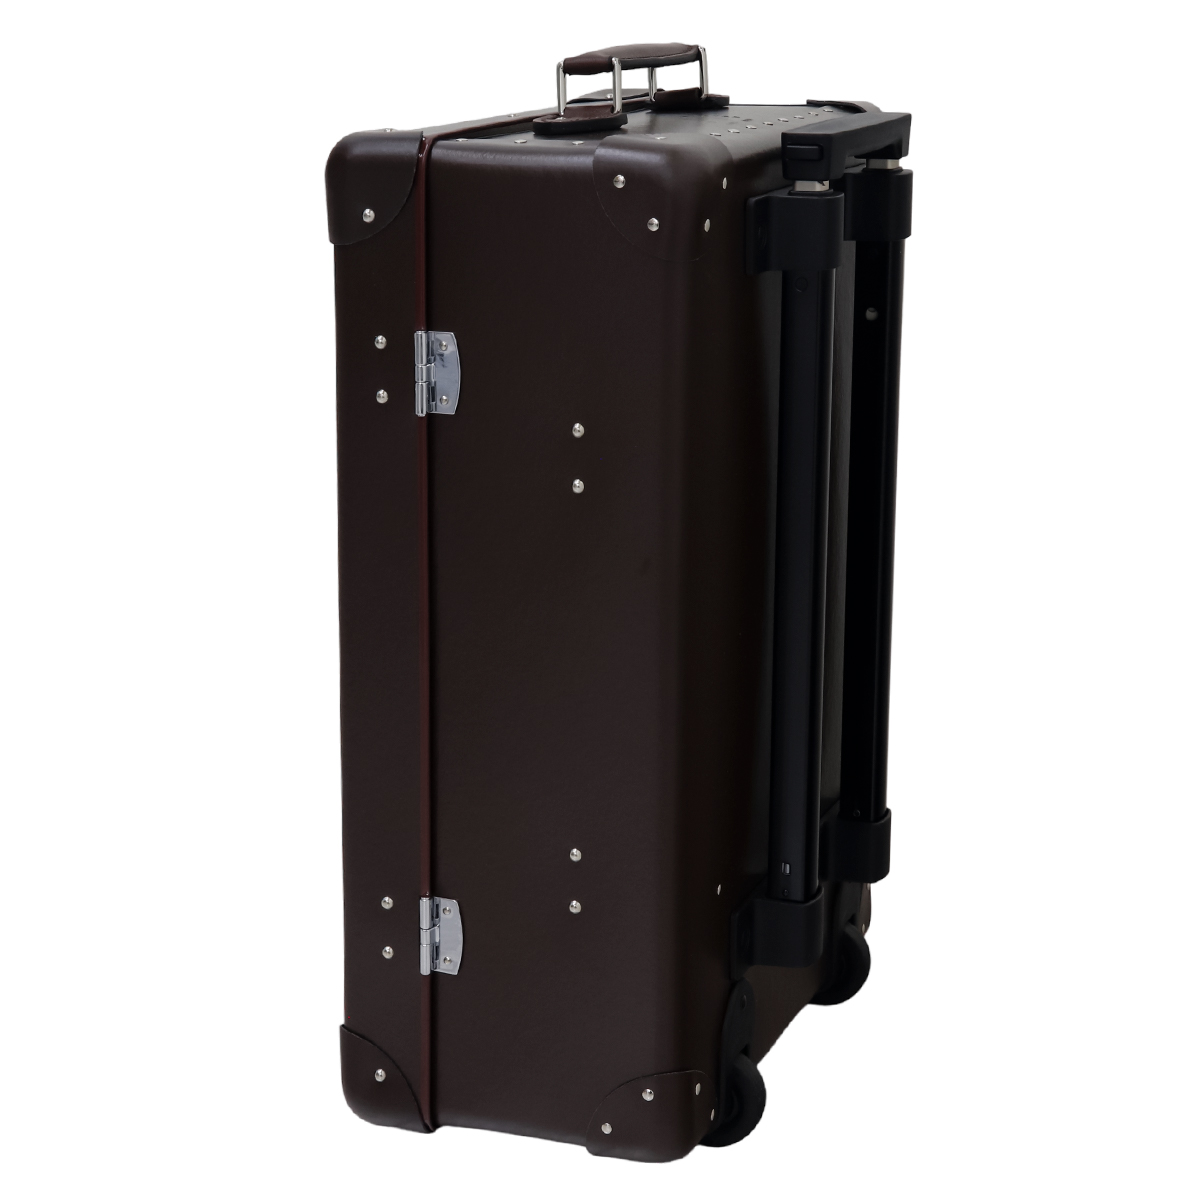 国内送料無料国内送料無料グローブトロッター キャリーケース GLOBE TROTTER キャリーケース 正規品 オリジナル キャリーオン  ORIGINAL 18インチ スーツケース、キャリーバッグ